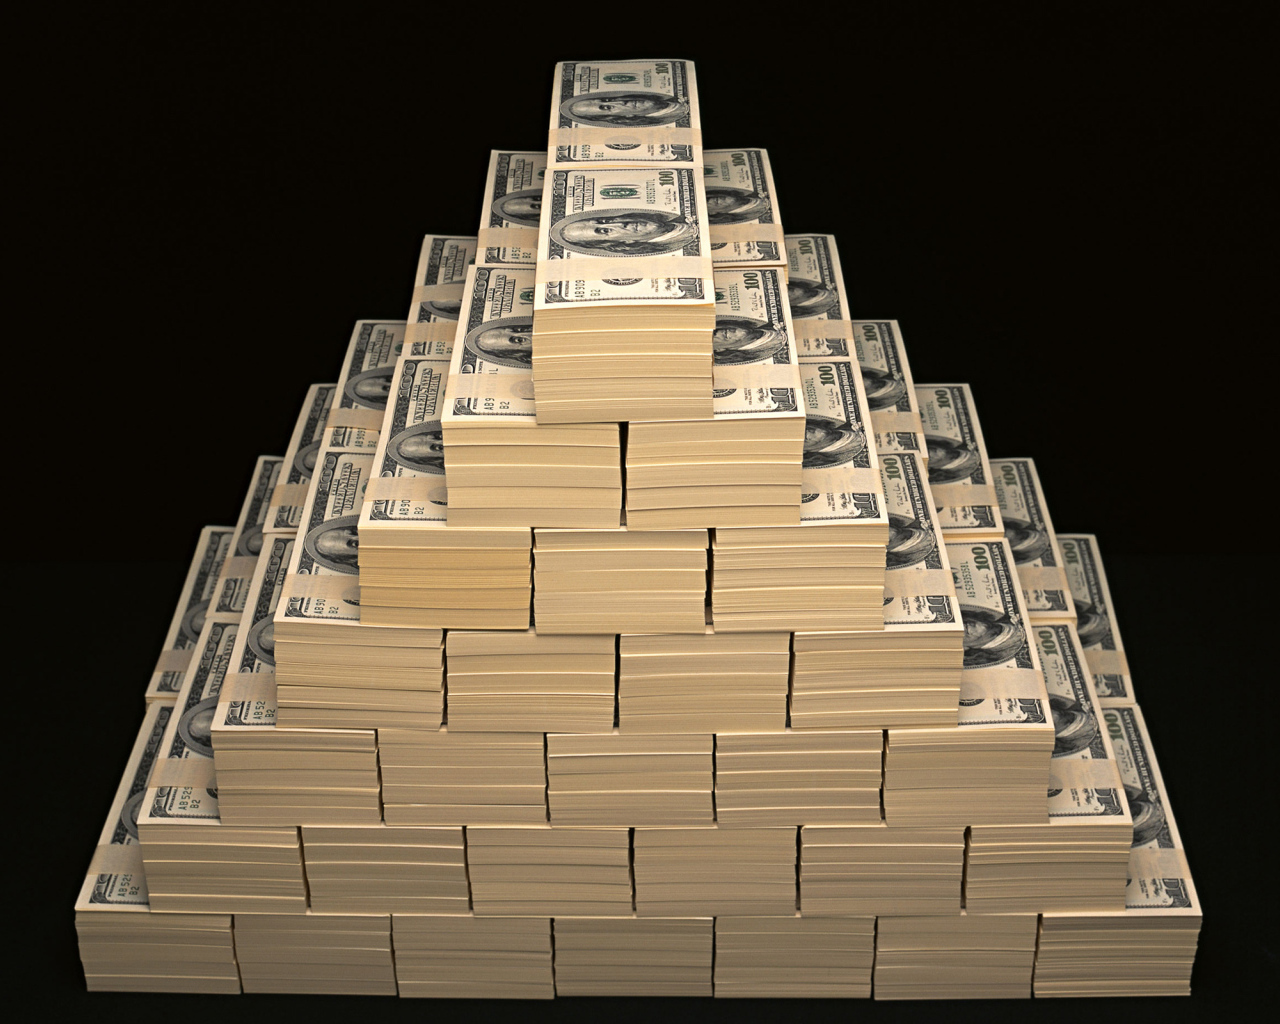 Пирамида из долларов